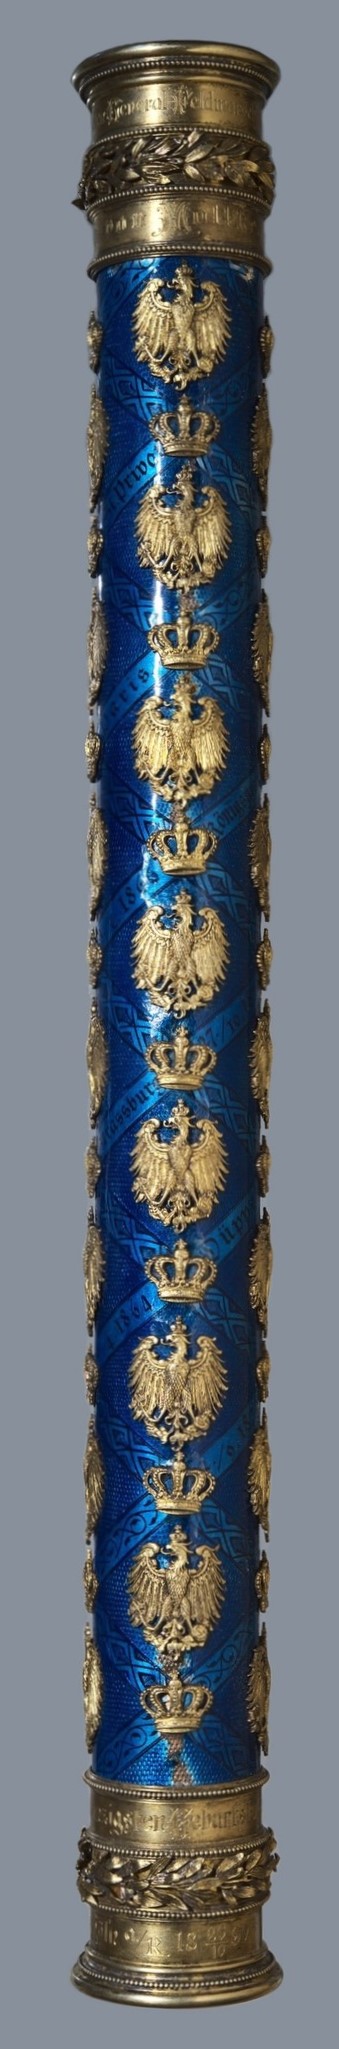 Prussian Field Marshal's Baton of Helmuth von  Moltke the Elder.jpg